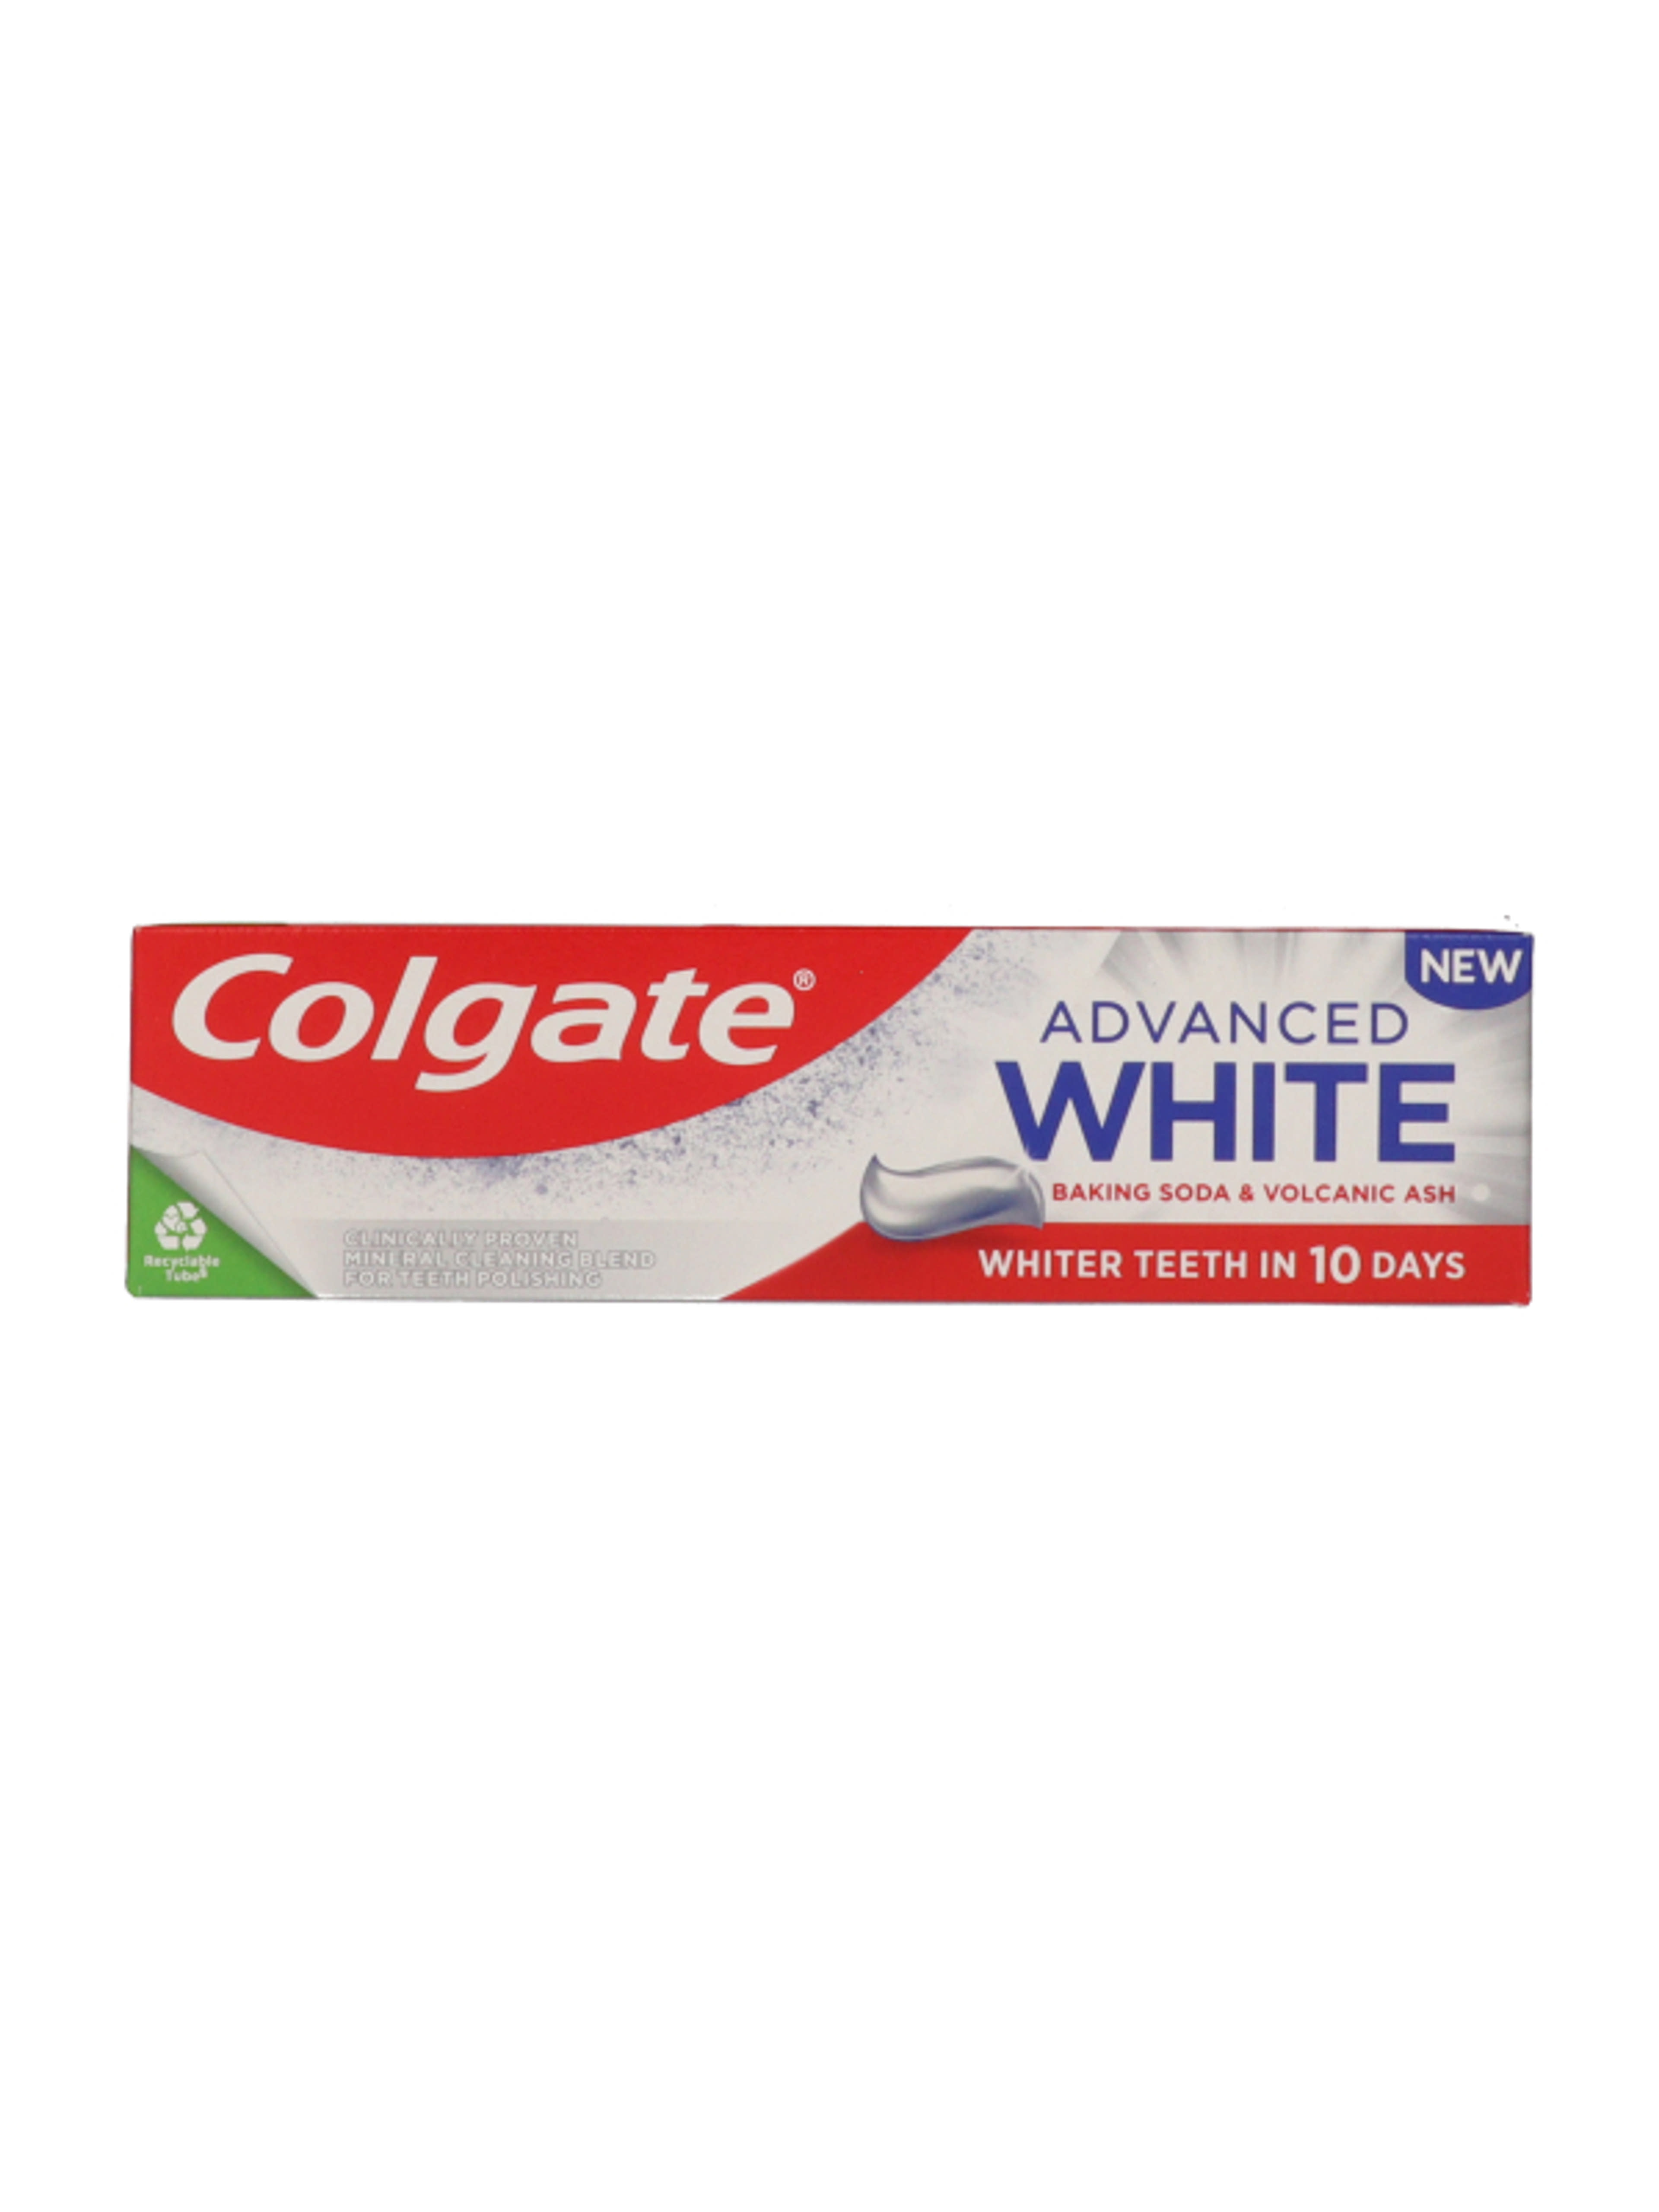 Colgate Advanced White fogkrém szódabikarbónával és vulkáni hamuval - 75 ml